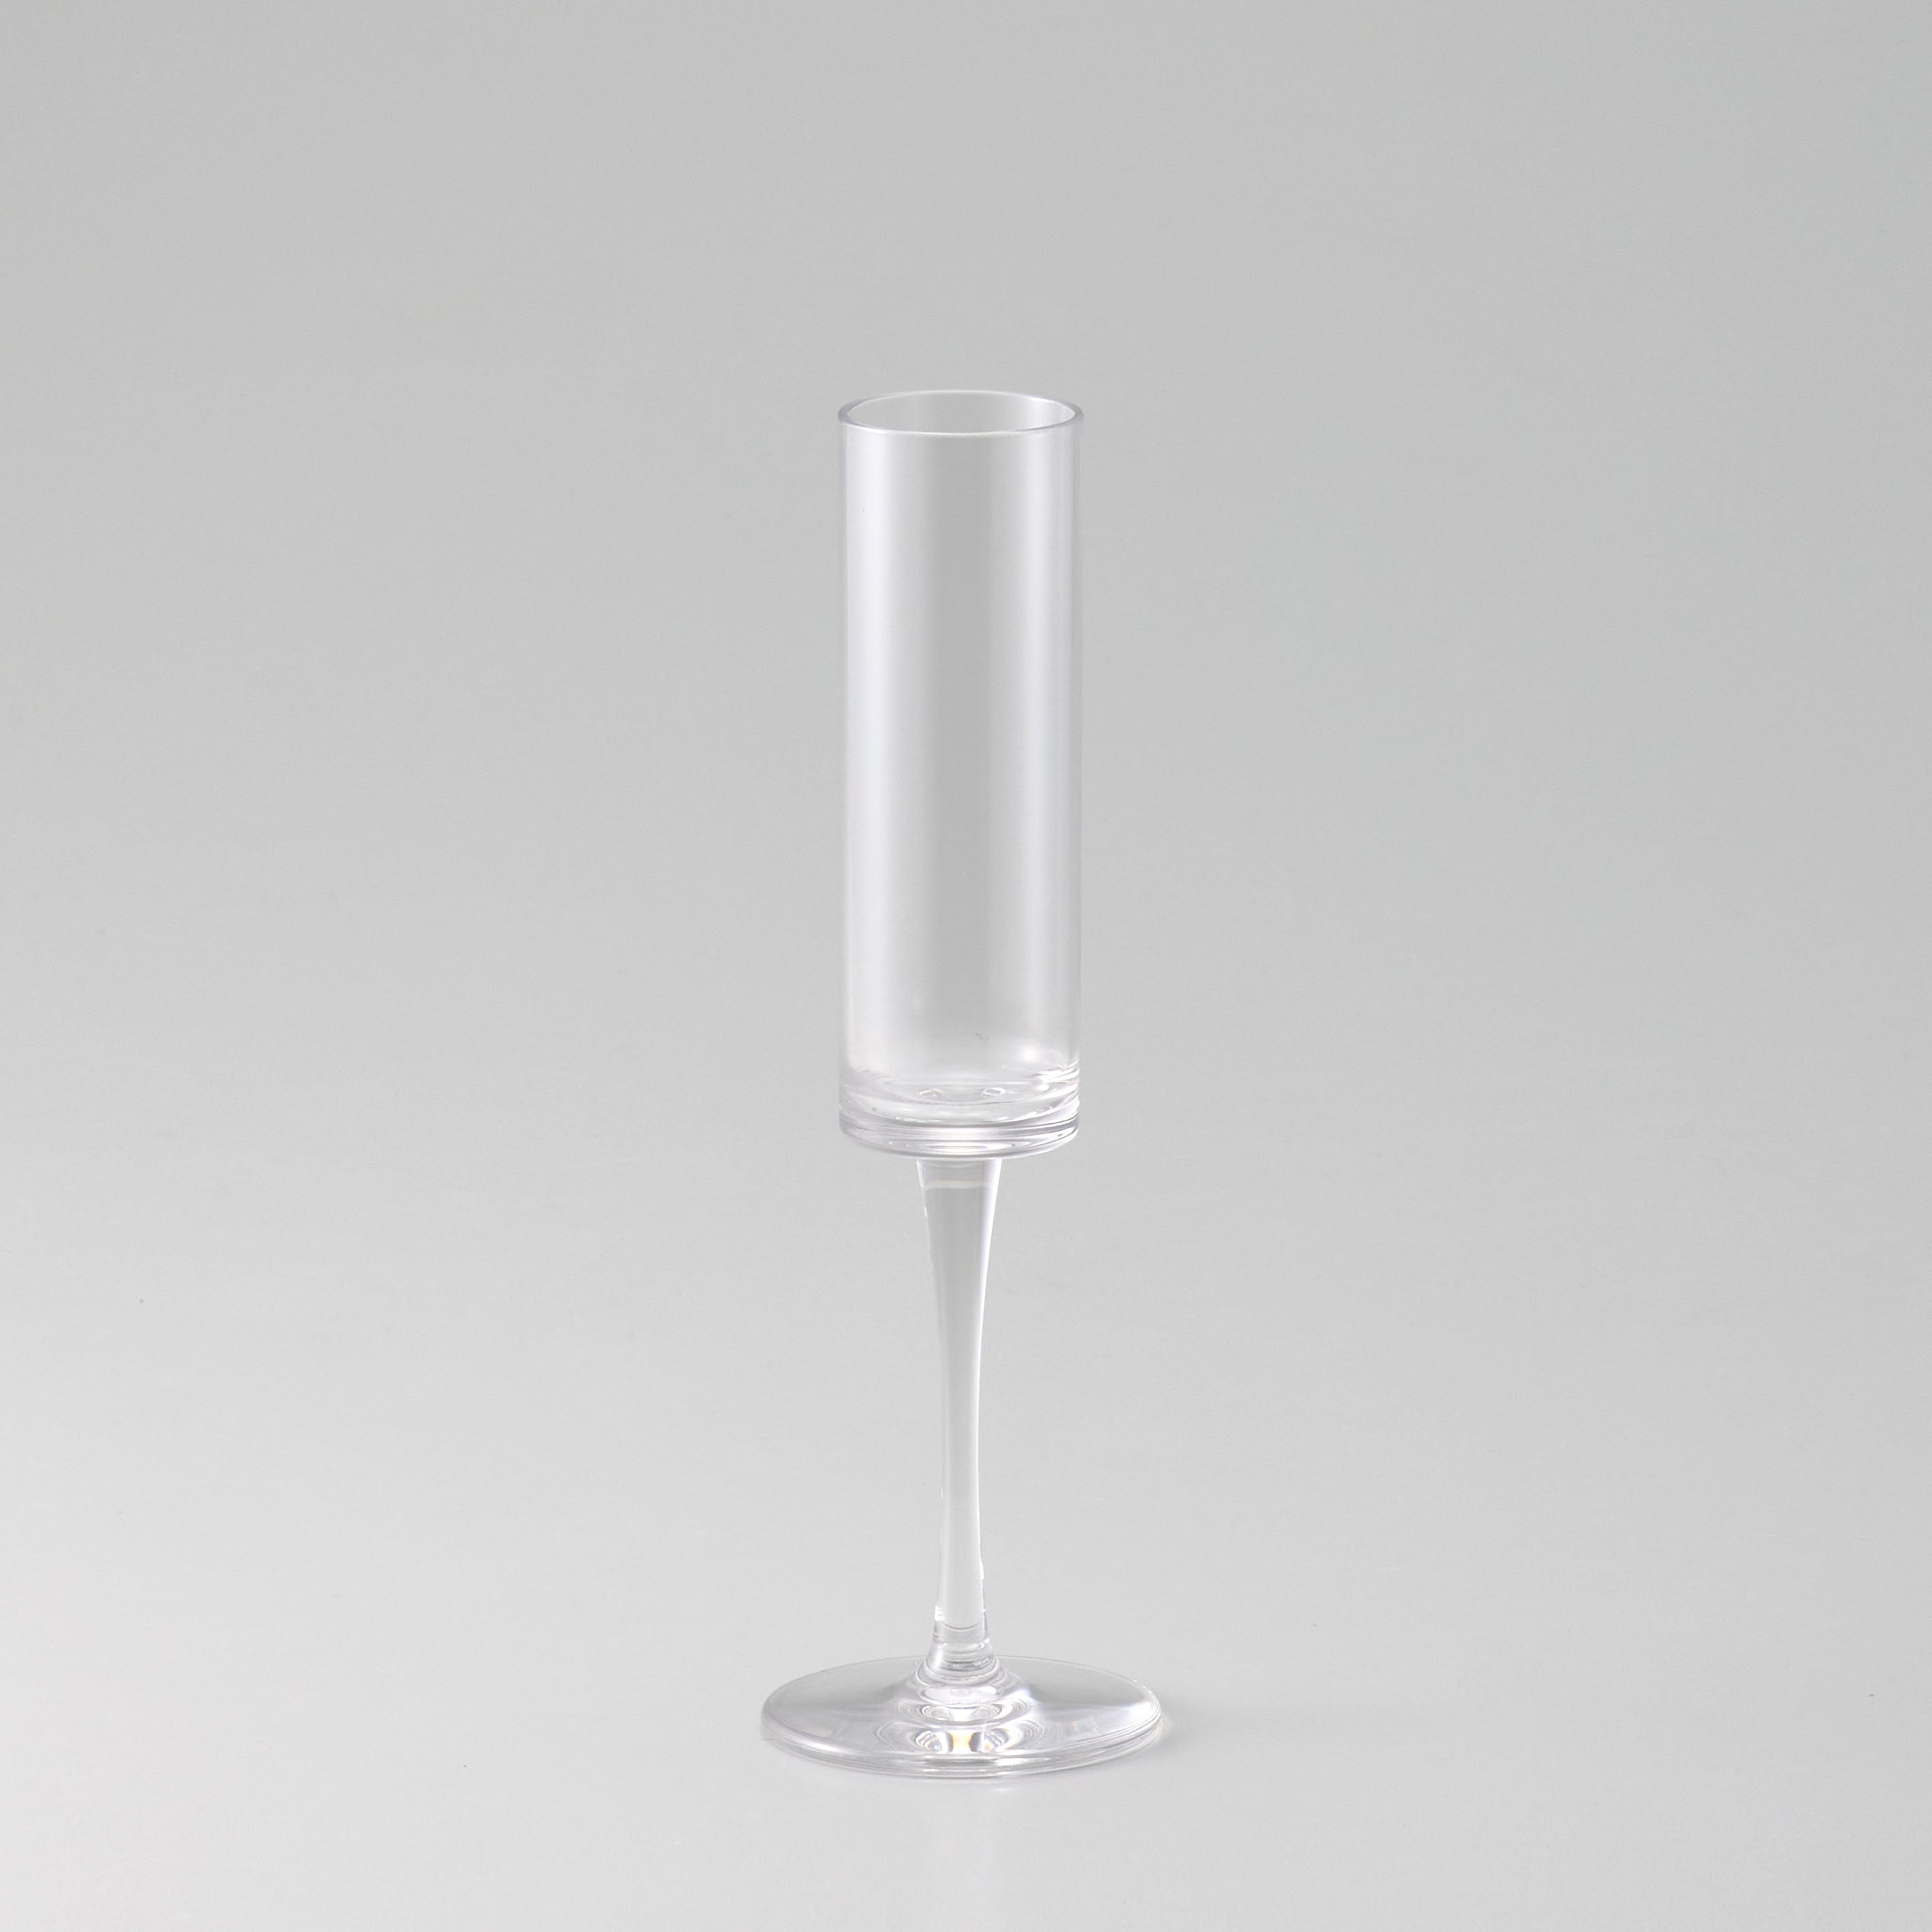 すっきり美しいフルートグラス型【PC flute - ピーシー フルート】割れにくいポリカーボネート製